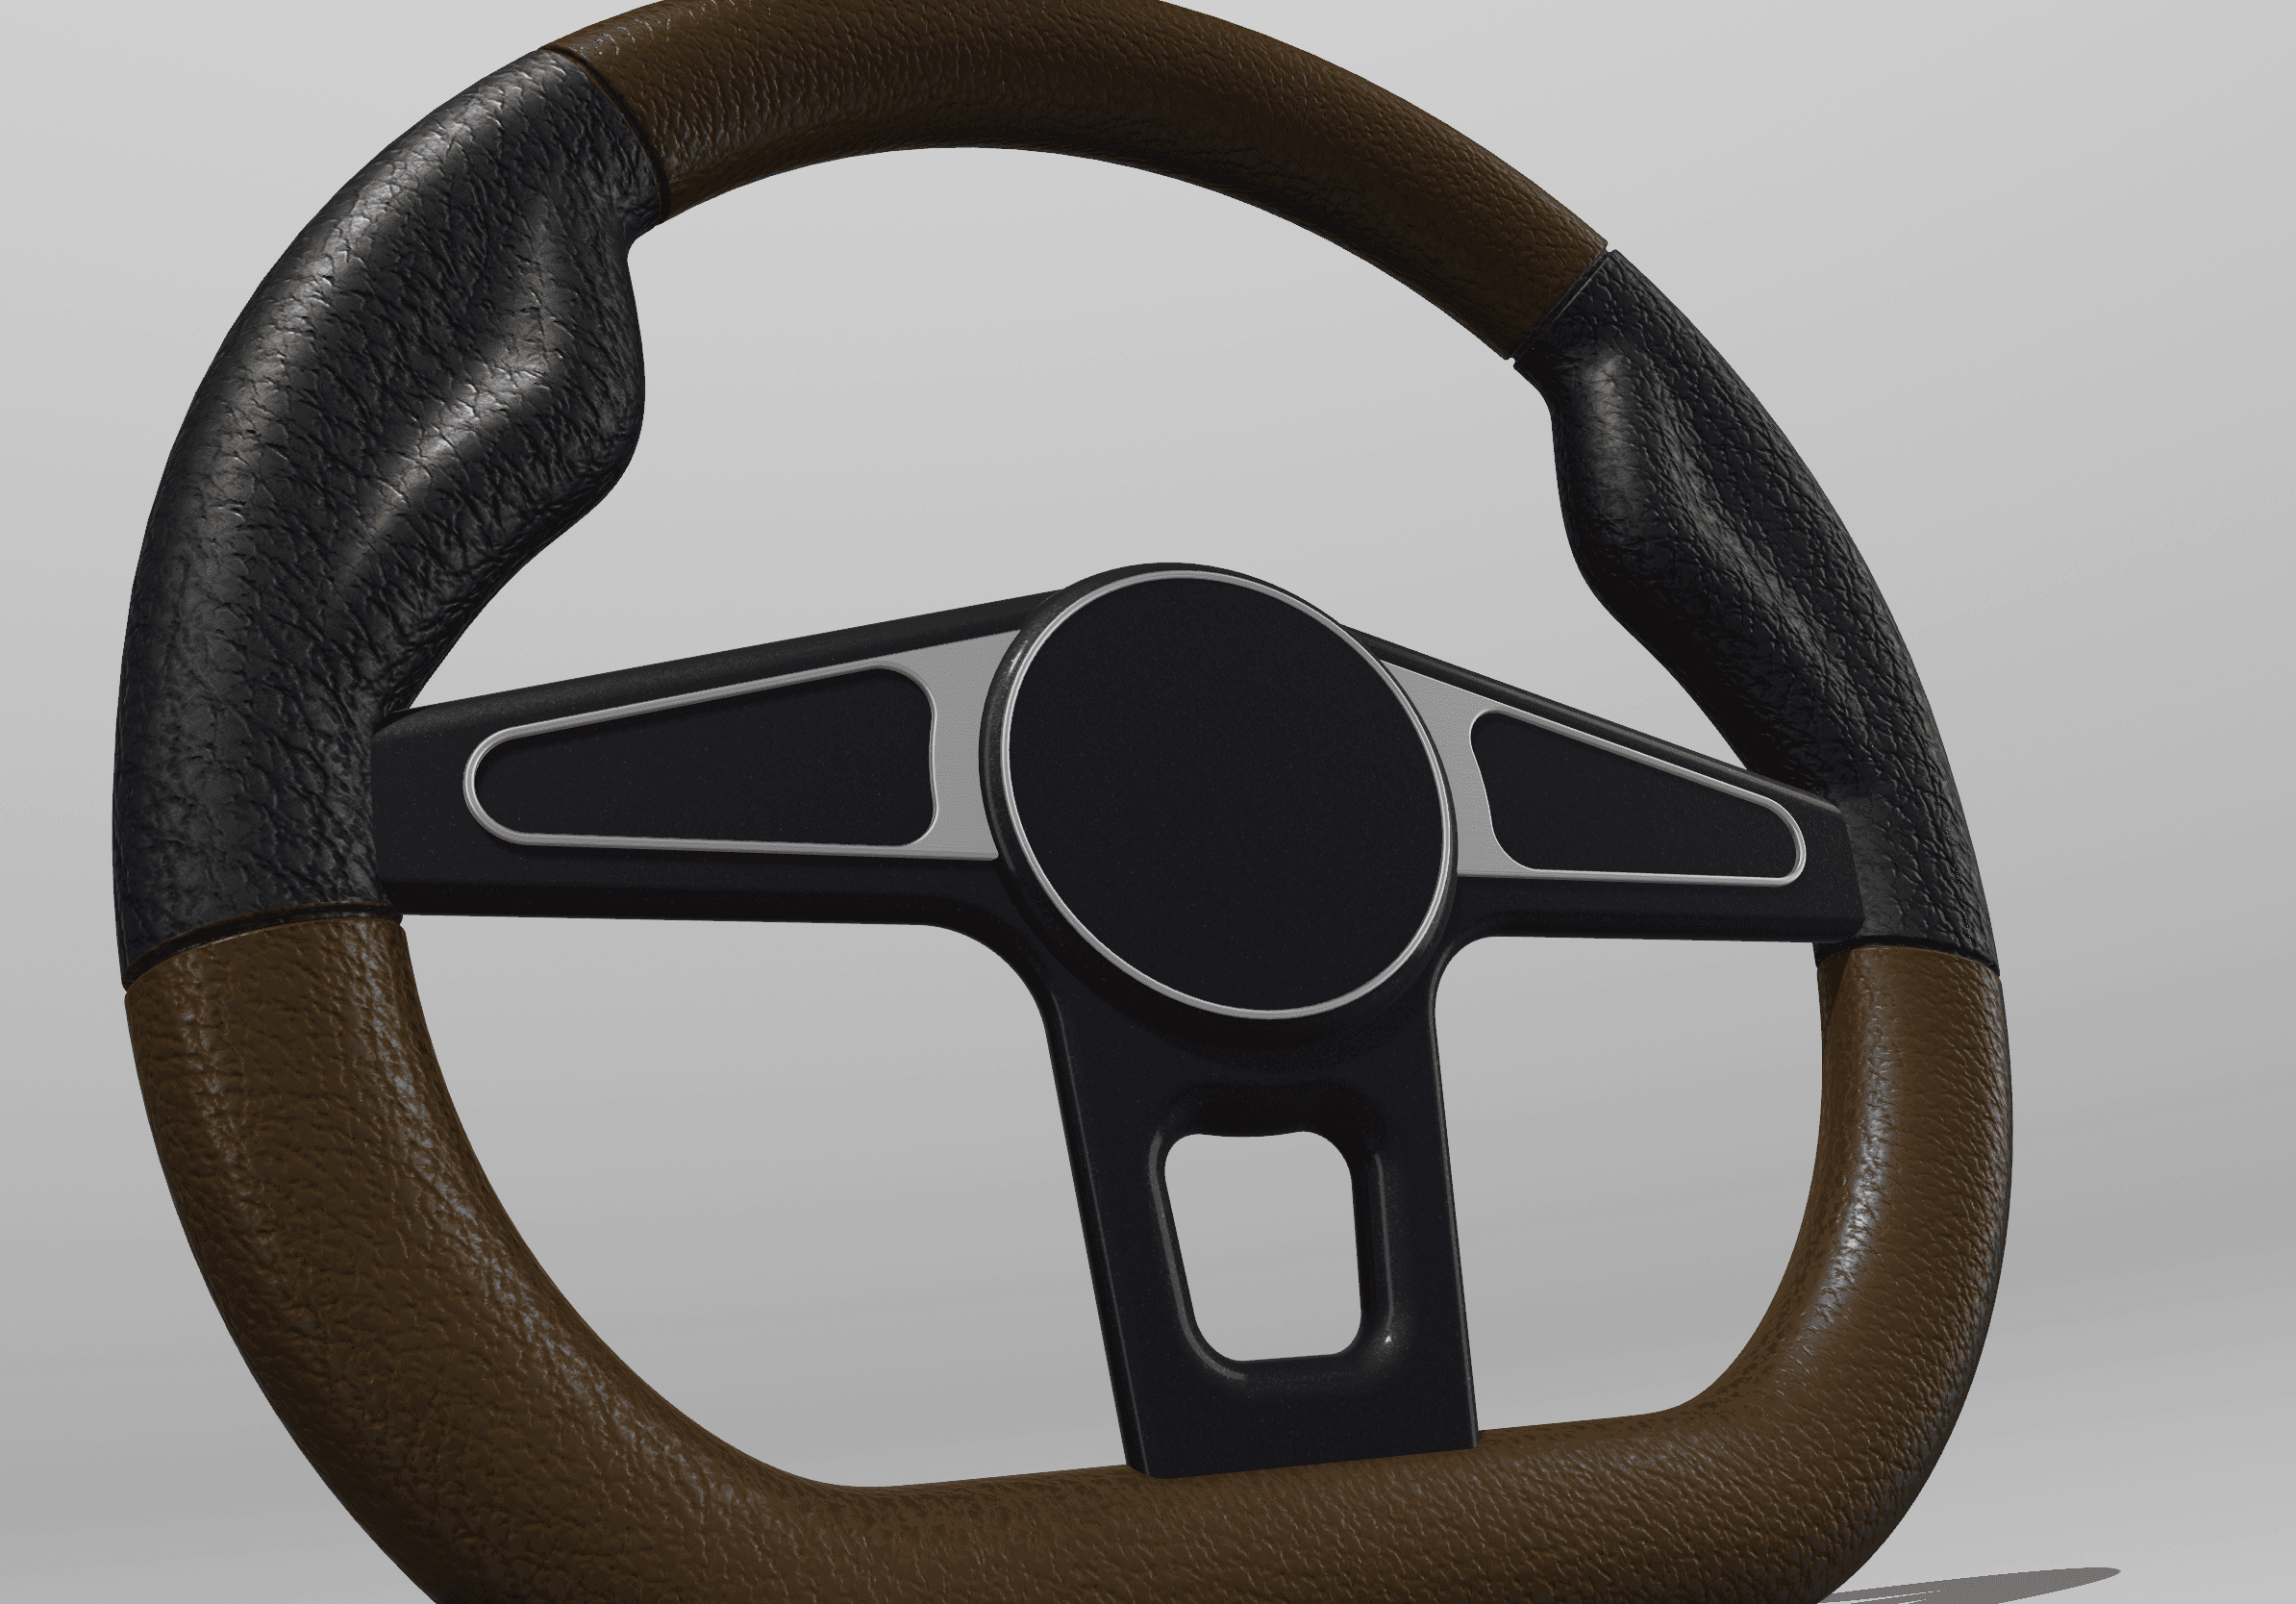 steeringwheels.obj 3d model